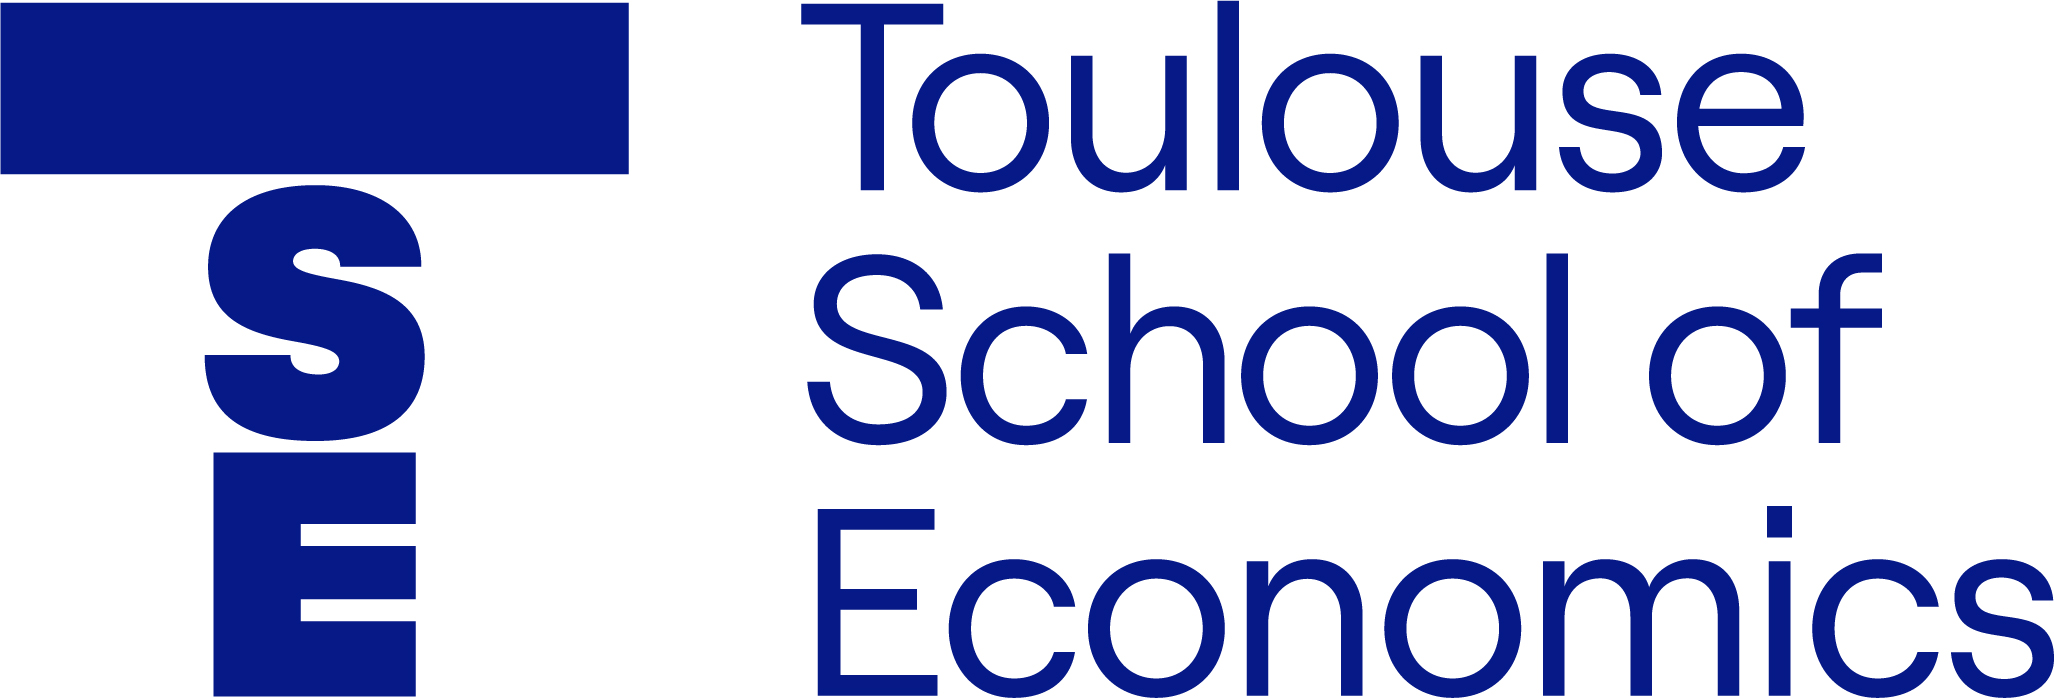 Ecole d’Economie de Toulouse
Université Toulouse 1 Capitole – Masters en Mathématiques Appliquées